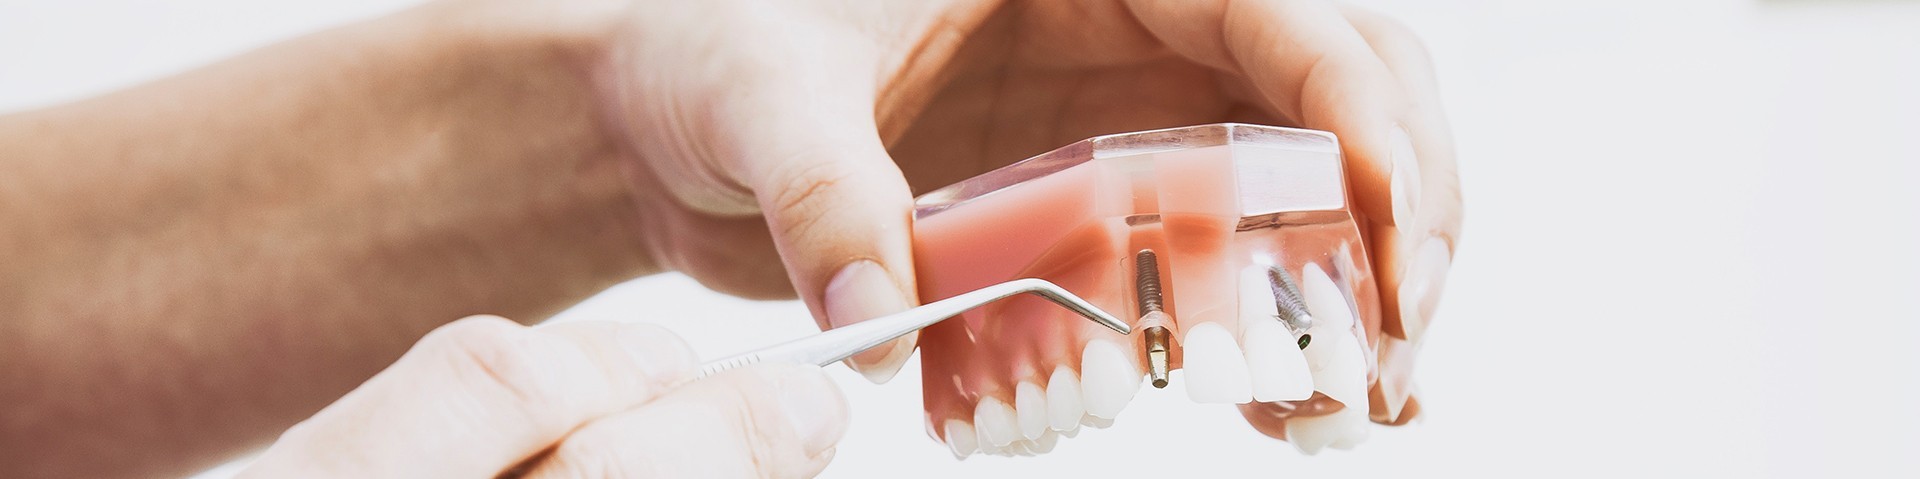 Implantologie au cabinet dentaire du Dr Lavigne à Hyères